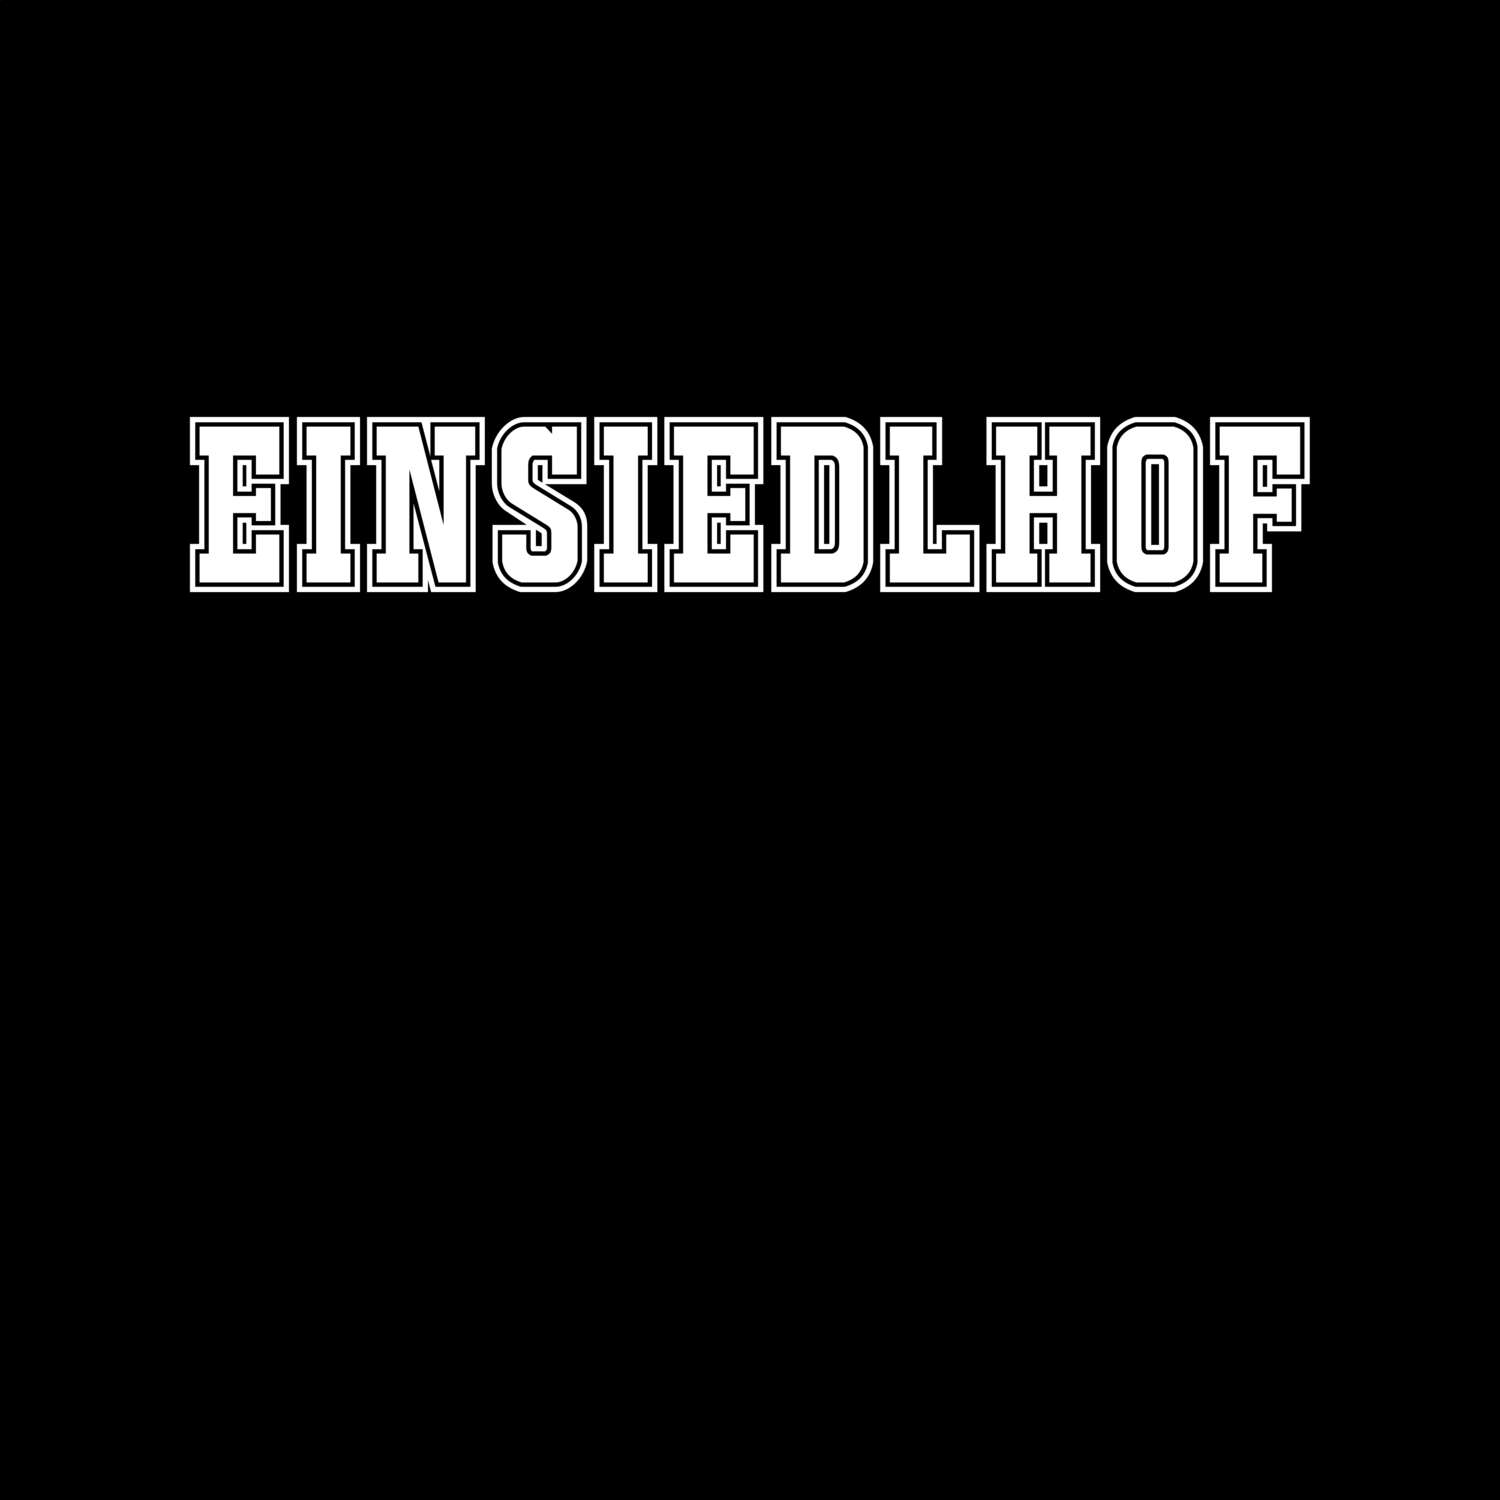 Einsiedlhof T-Shirt »Classic«